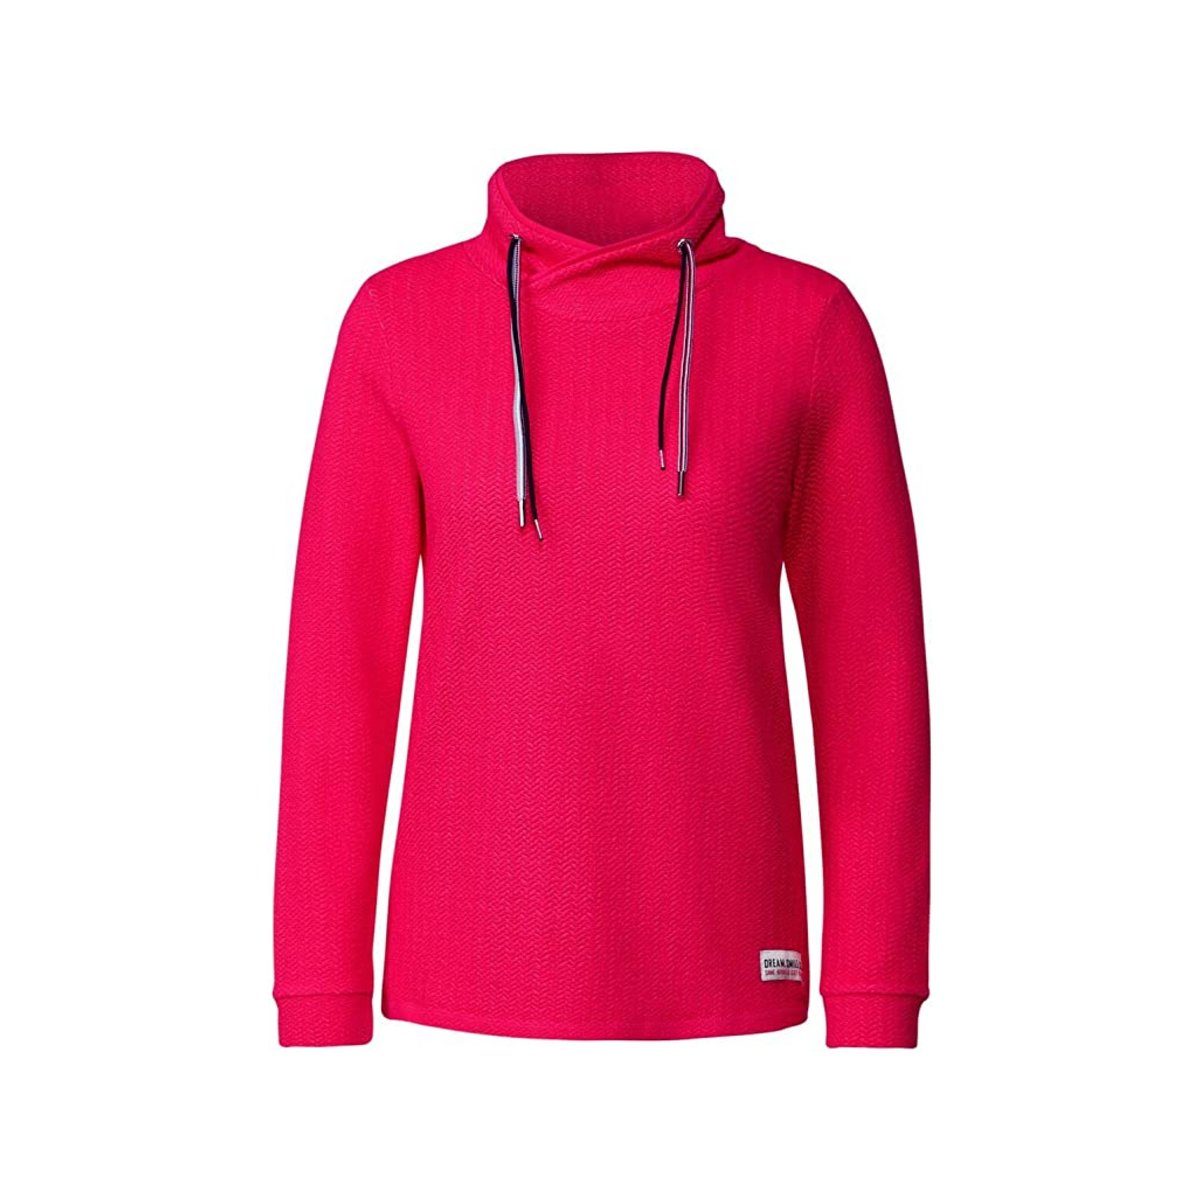 (1-tlg) Cecil fit regular fresh Sweatshirt fuchsia pink